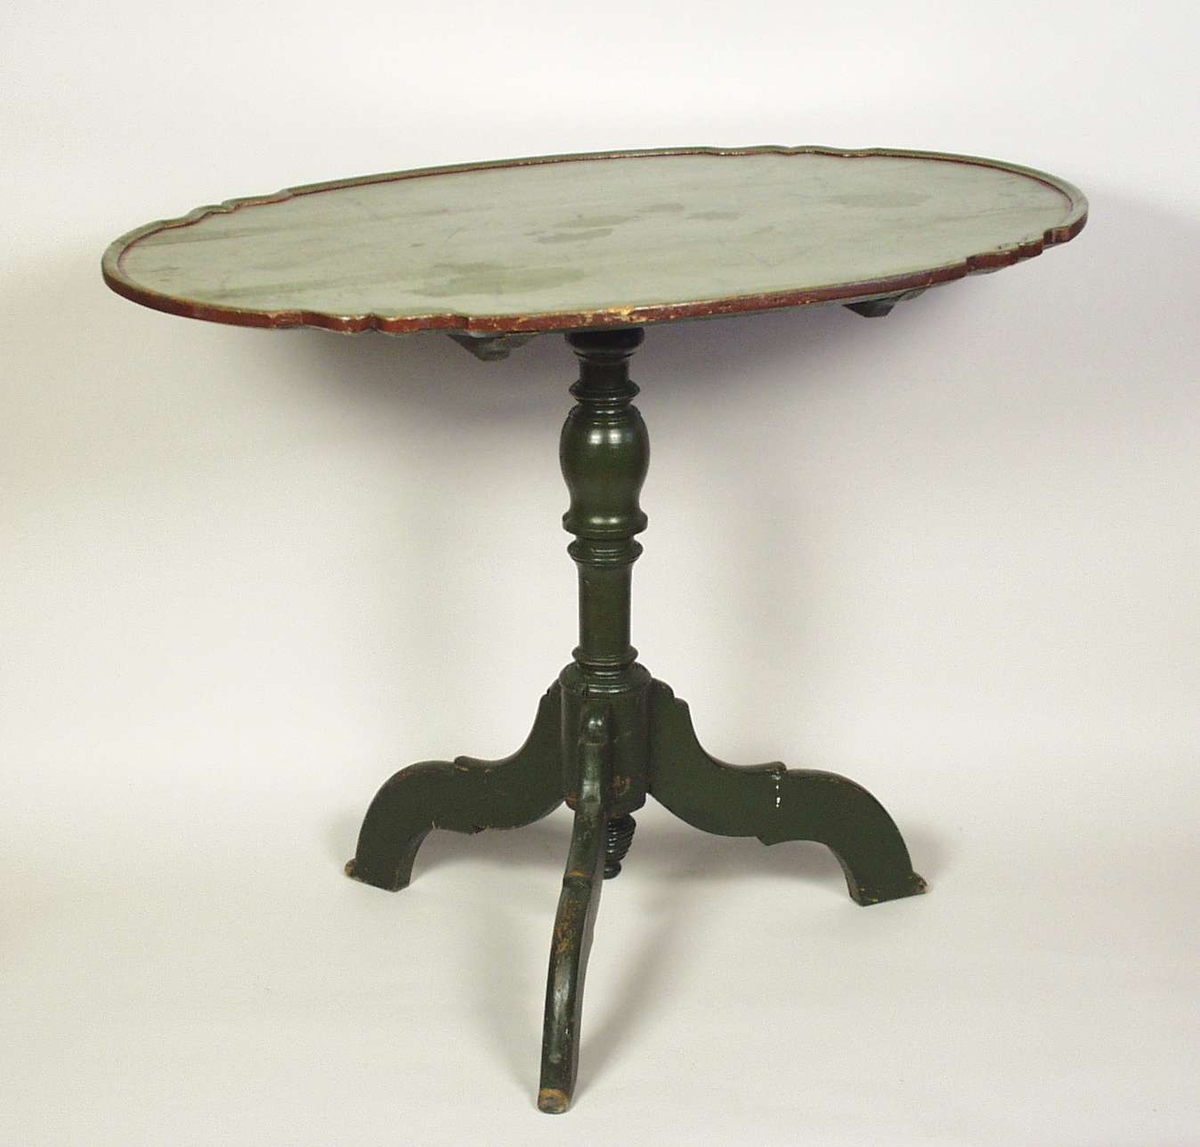 Vippebord med oval bordplate og tredelt fot. Foten er dreid. Bordet er grønnmalt. Bordplaten er ådret.